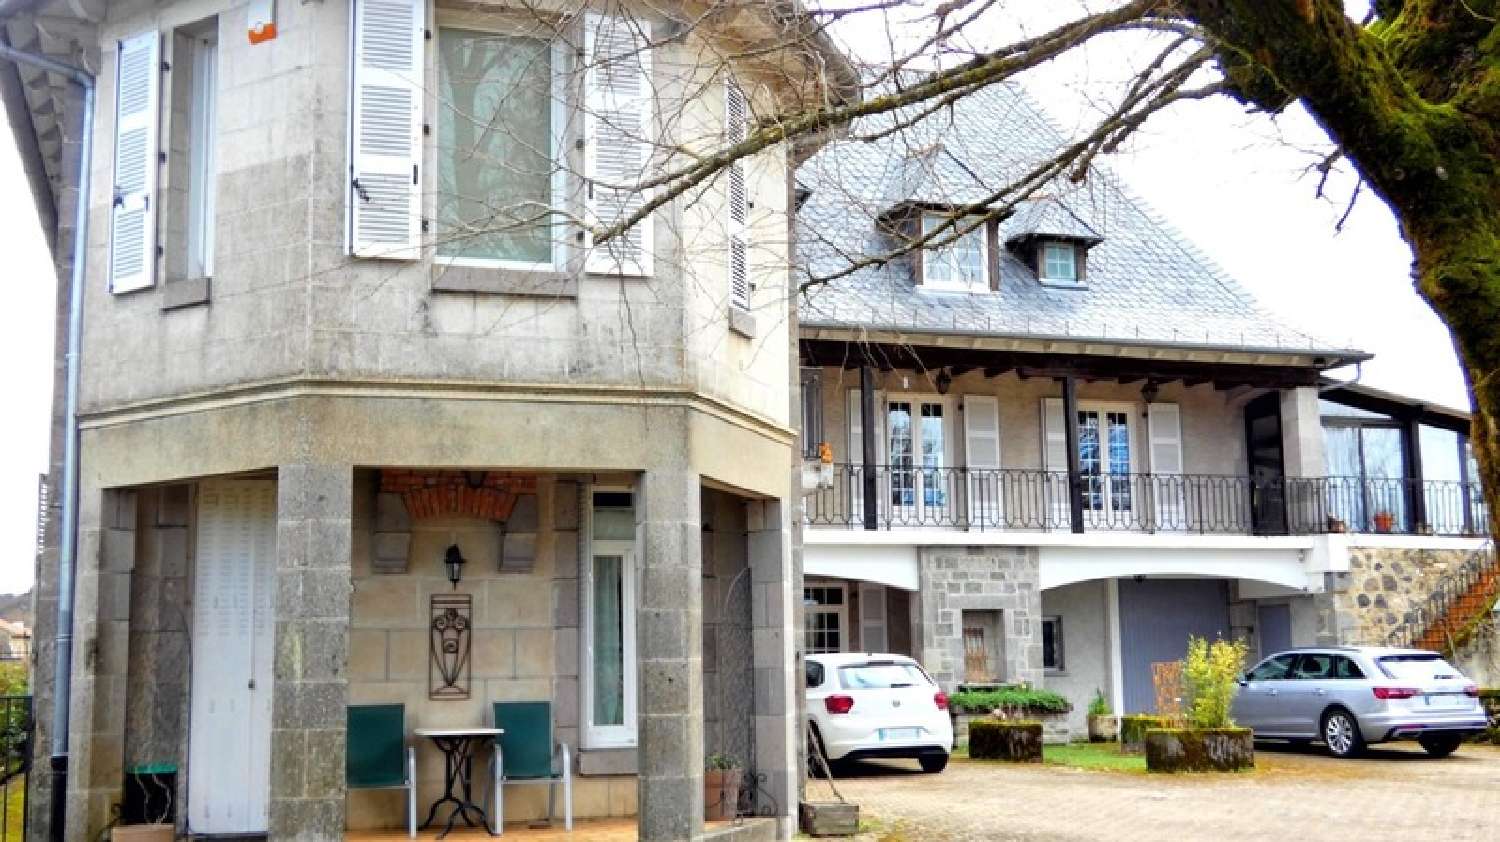  à vendre maison bourgeoise Arpajon-sur-Cère Cantal 2